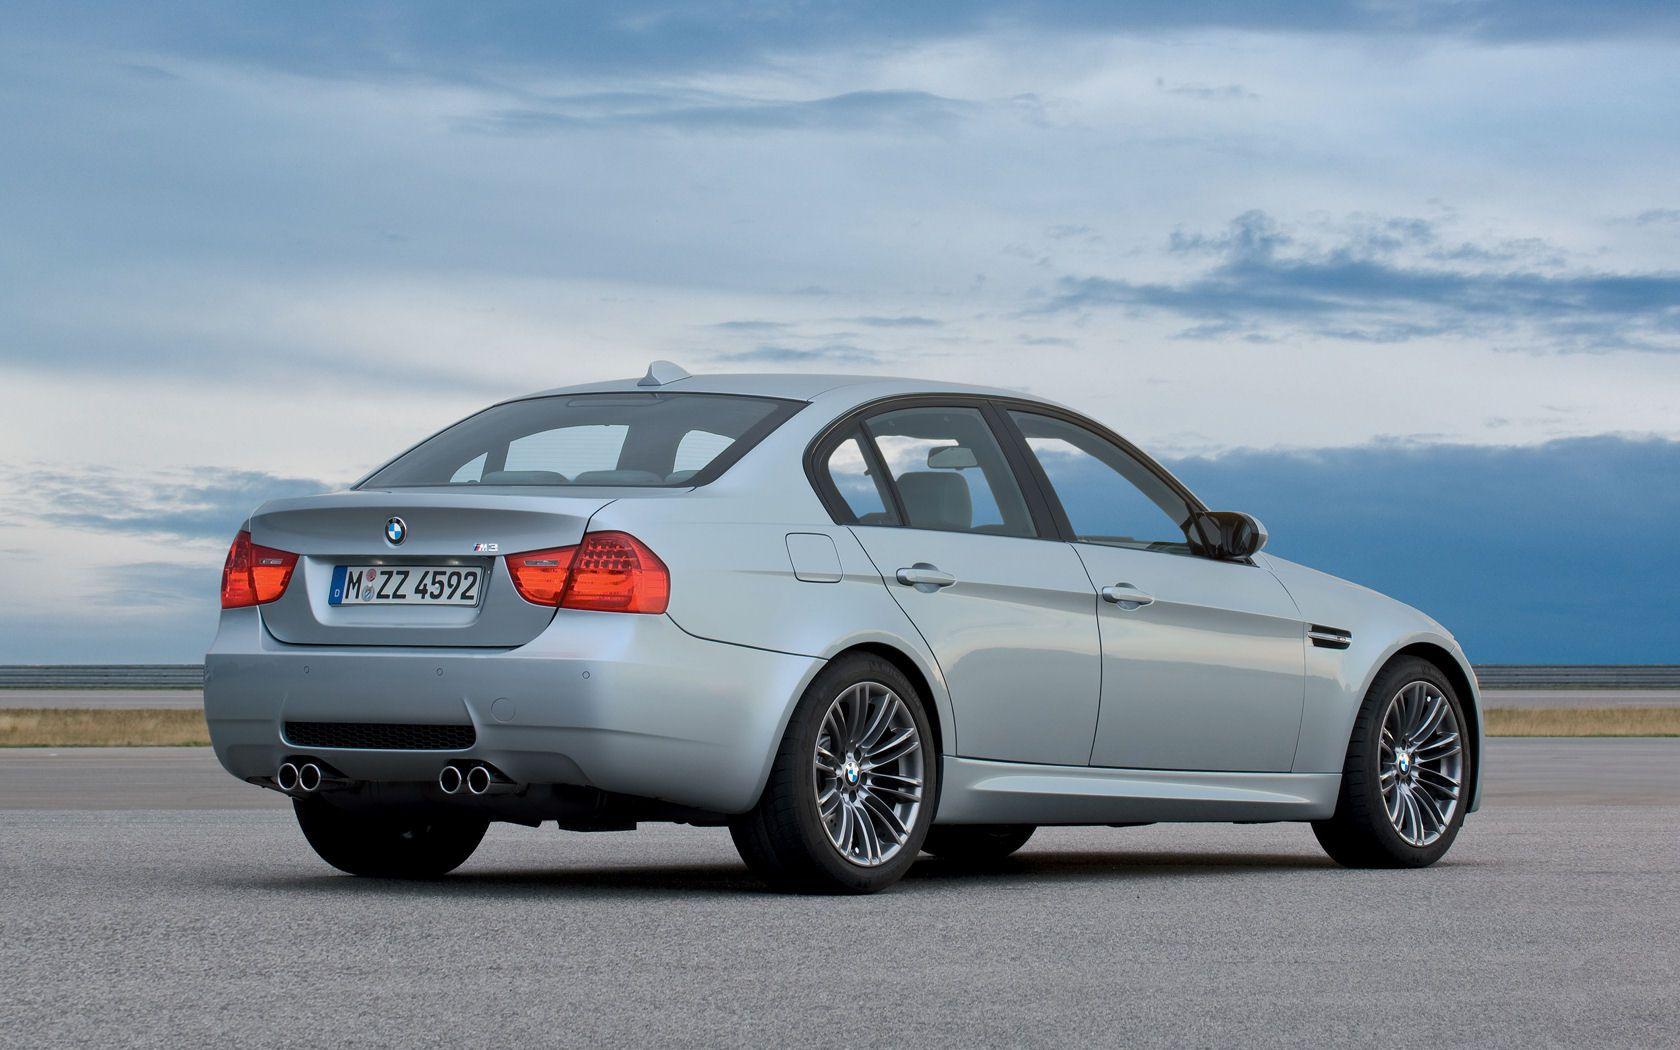 BMW 3 Series, 325i, 328i, 330i, 335i, 335d Widescreen Wallpaper / Desktop Background Picture